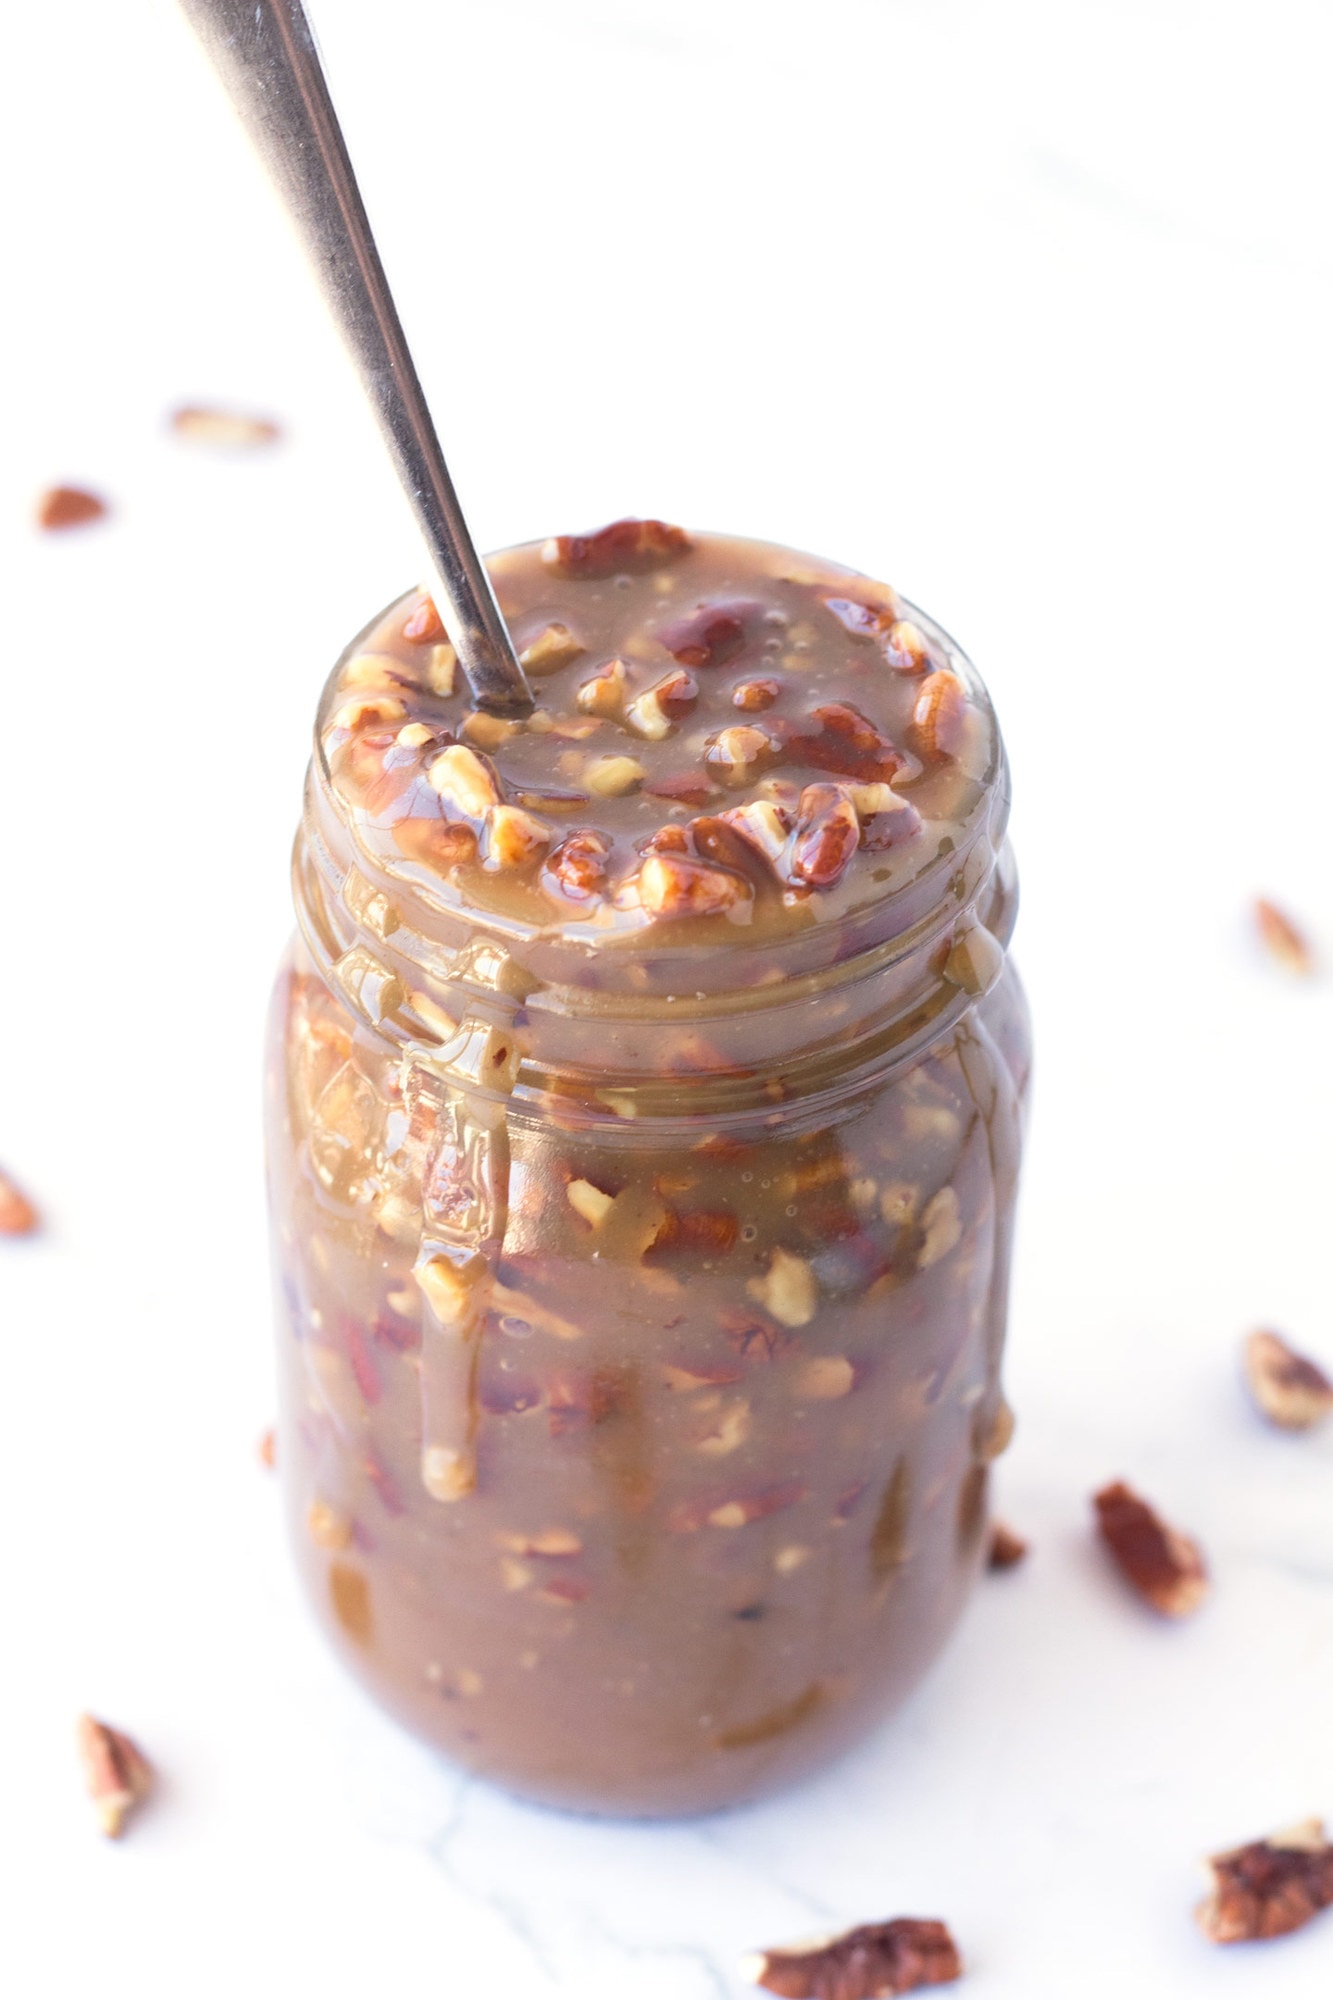 Close up of jar of Microwave Caramel Pecan Sauce